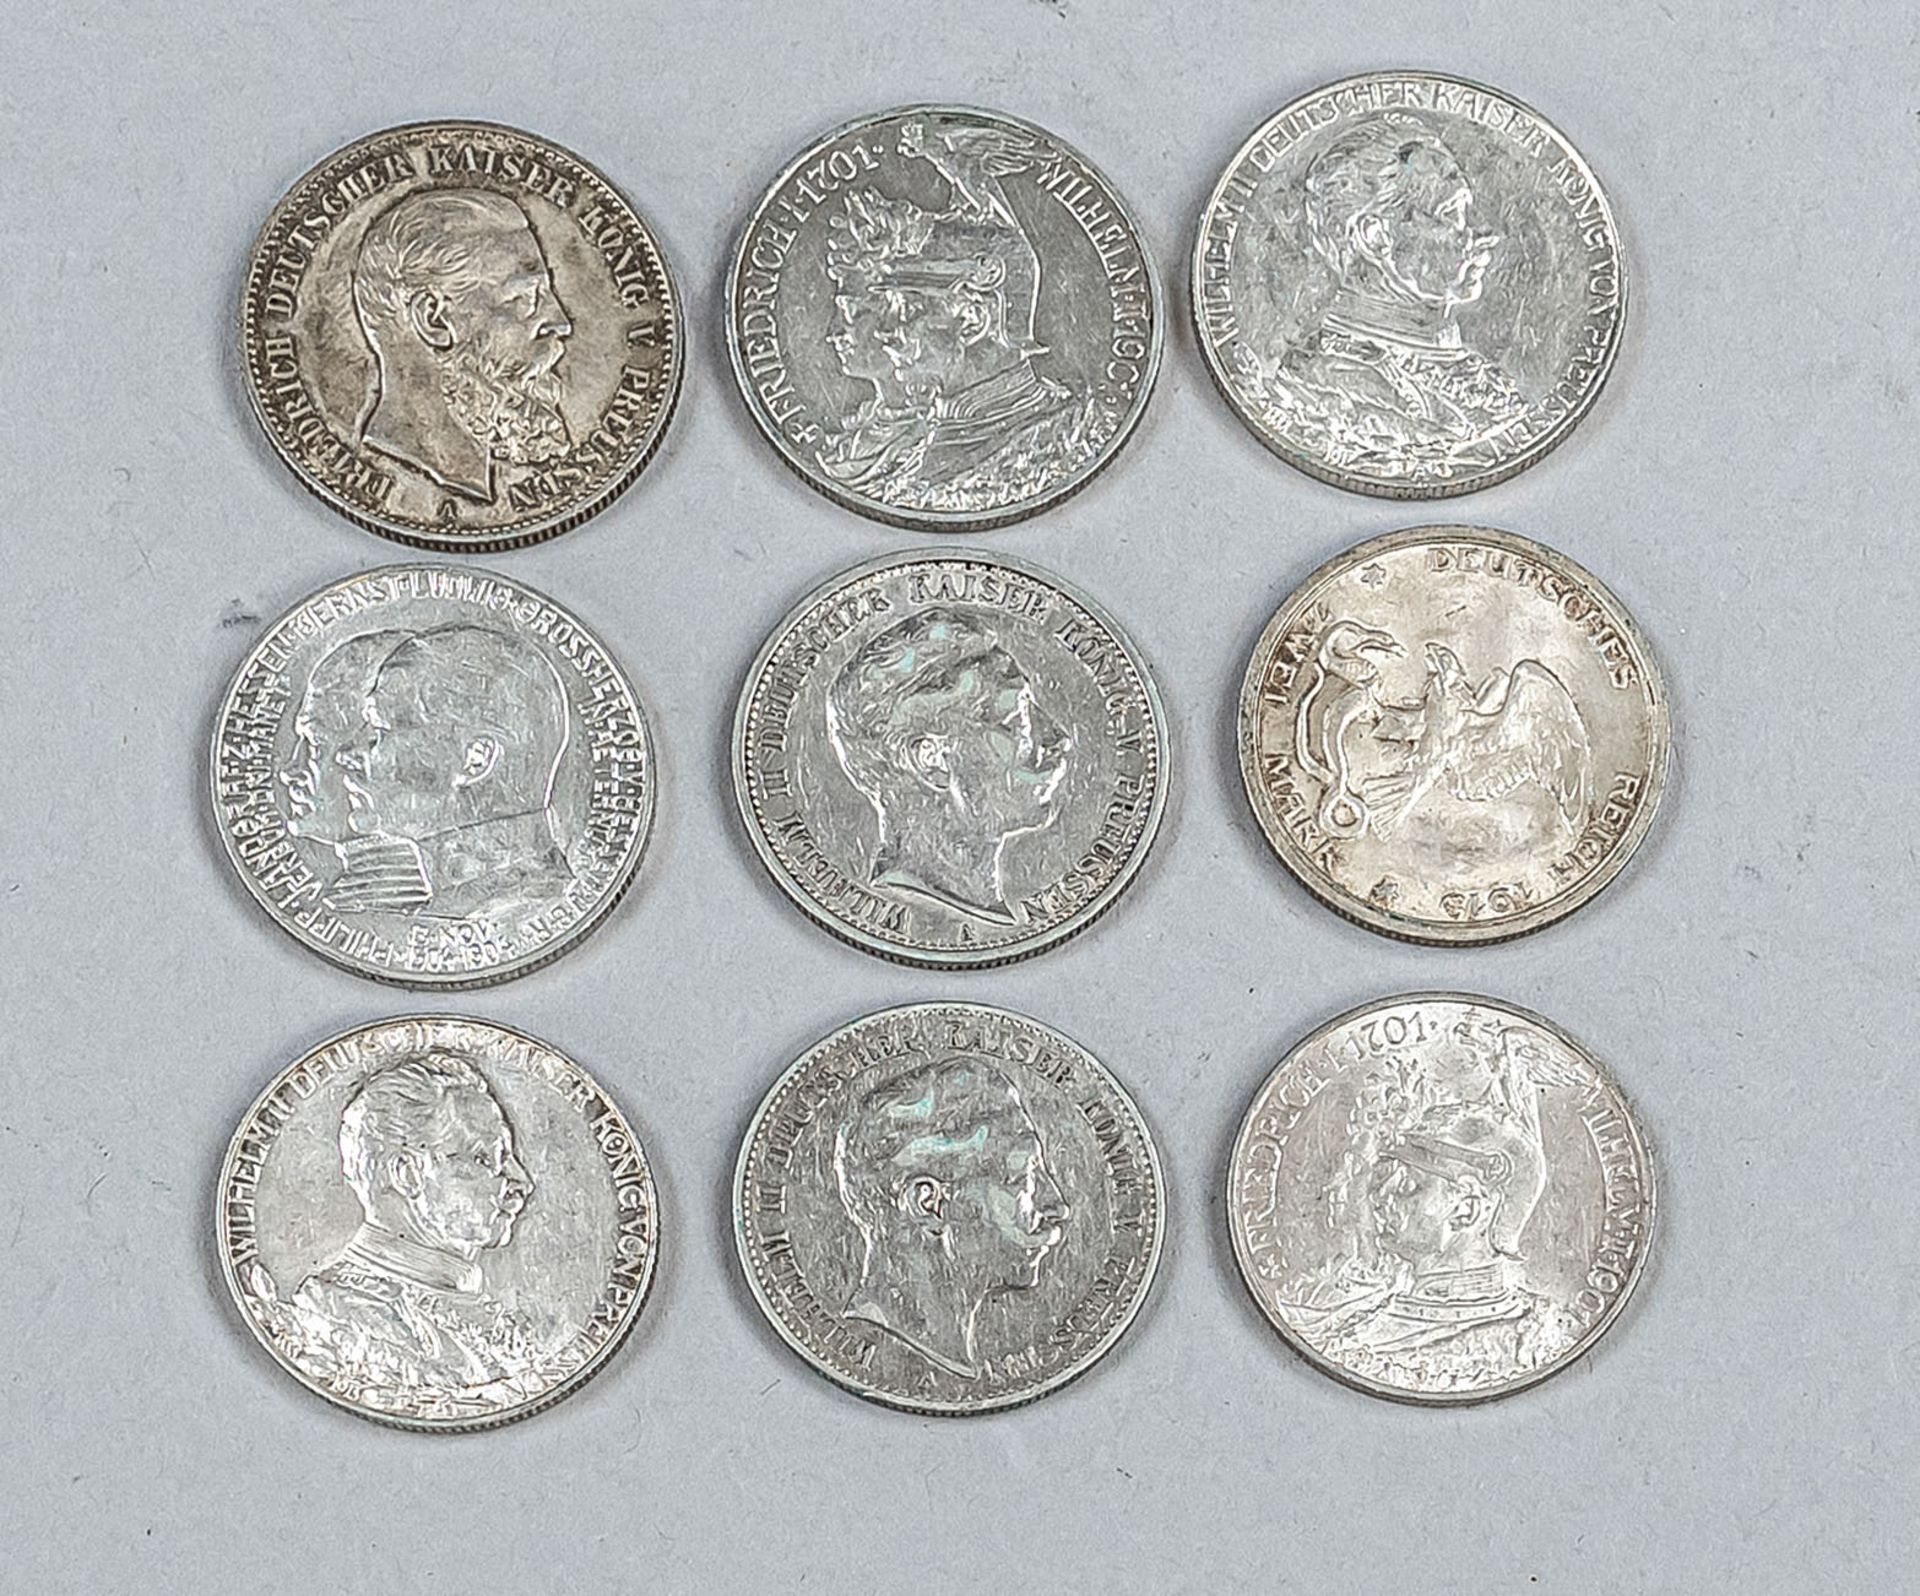 Konvolut Silbermünzen Deutsche